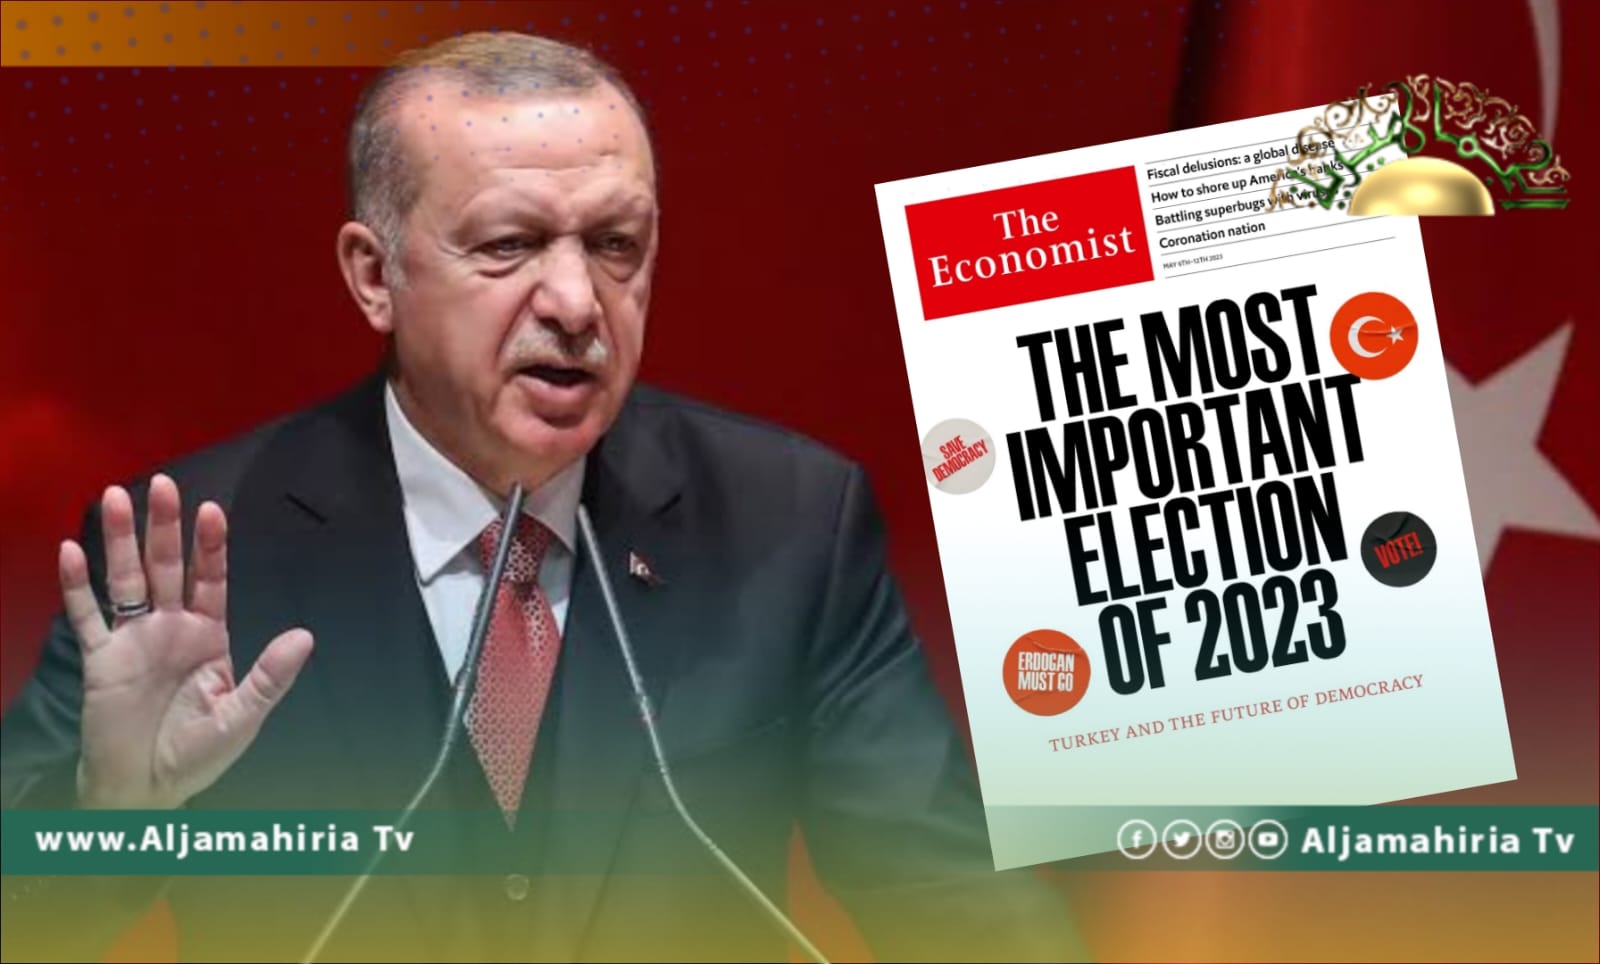 الرئيس التركي يزعم أن سياسة بلاده في ليبيا وسوريا تتسم بالثقة بالنفس والإنسانية